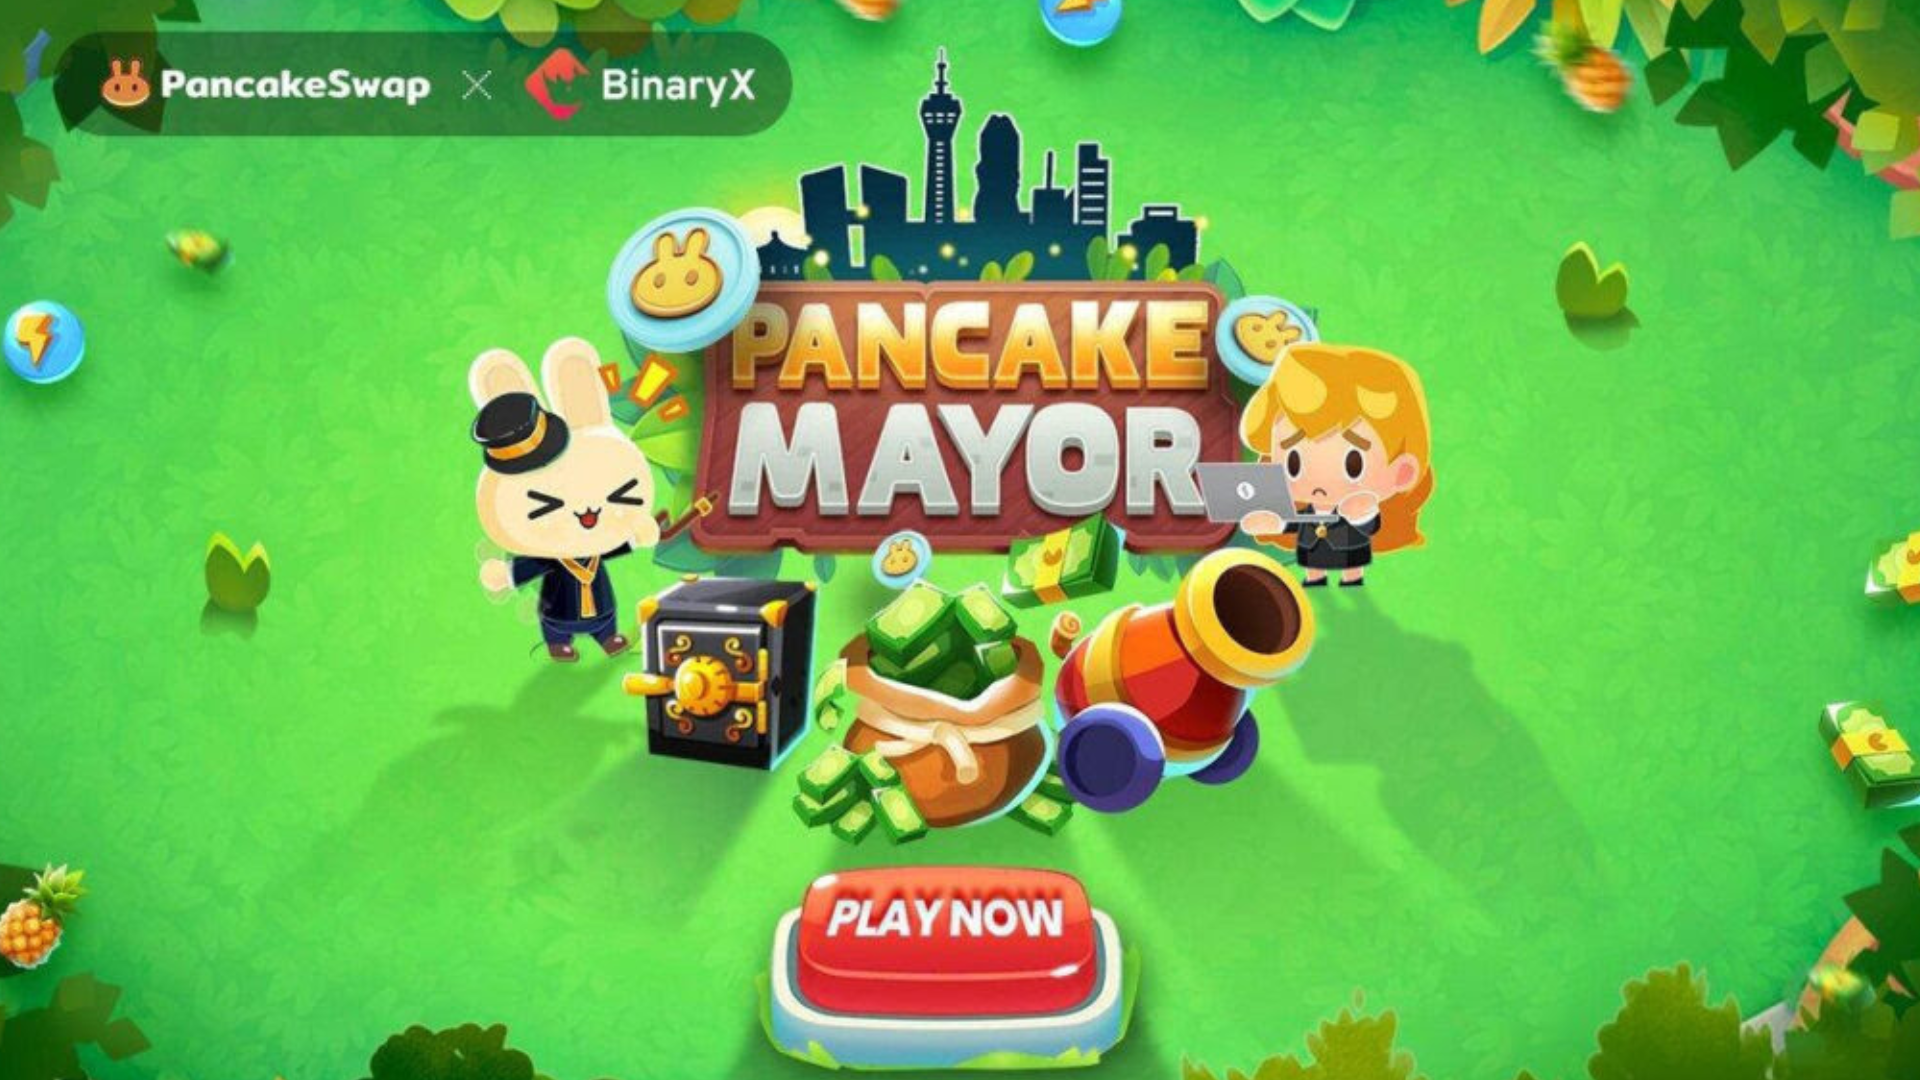 Crypto news indonesia, situs berita cryptocurrency & blockchain - binaryx rilis game simulasi kota pancake mayor di marketplace pancakeswap